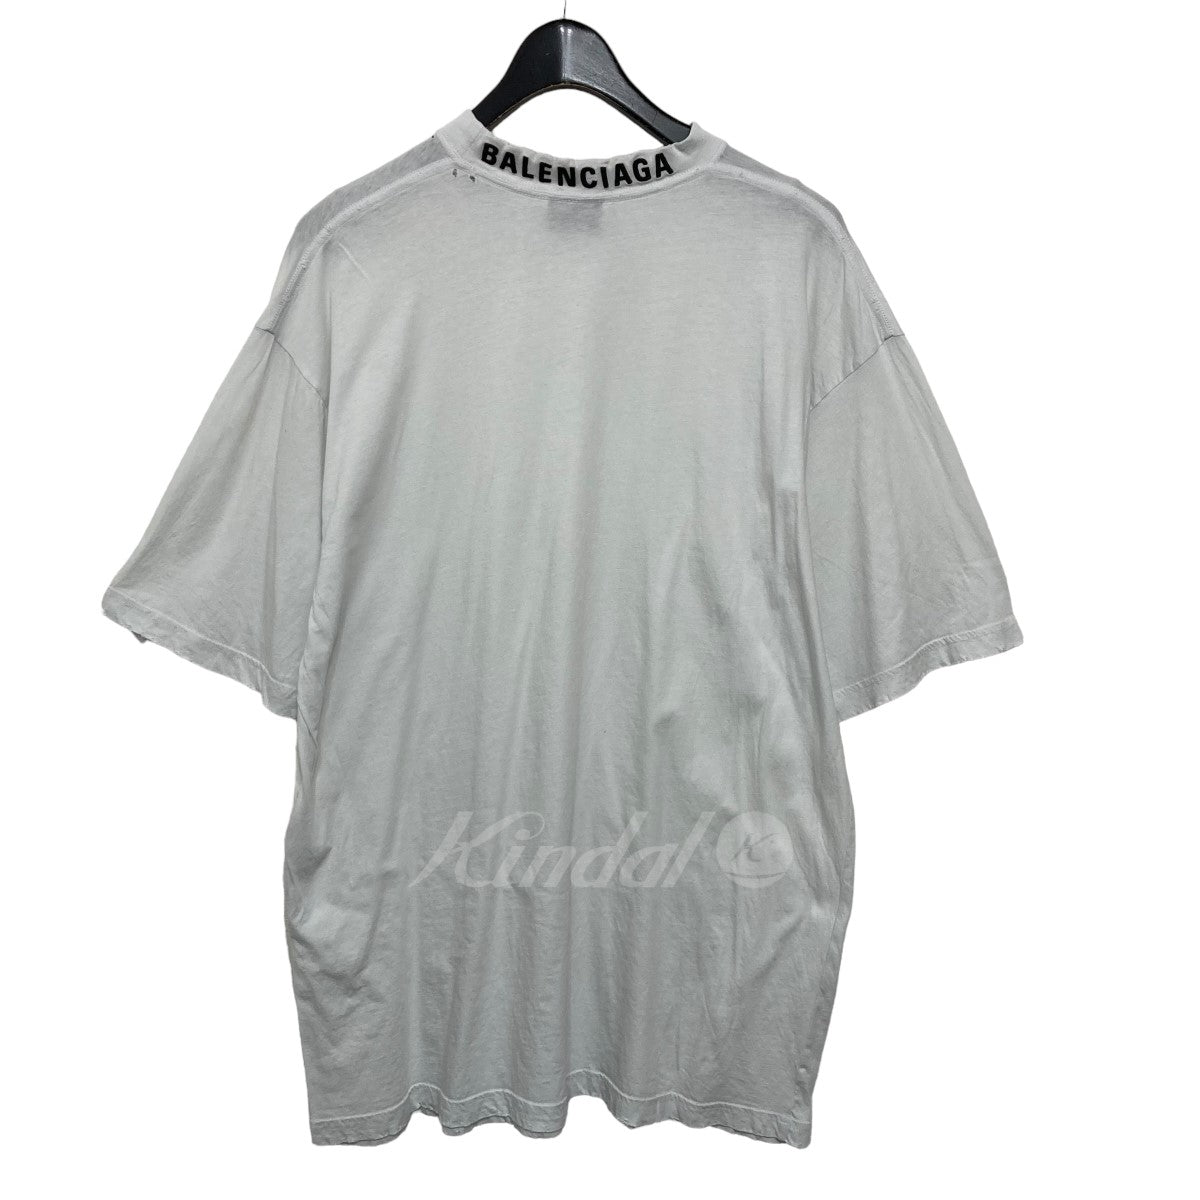 BALENCIAGA(バレンシアガ) ロゴ刺繍Tシャツ 739784 ホワイト サイズ 15 